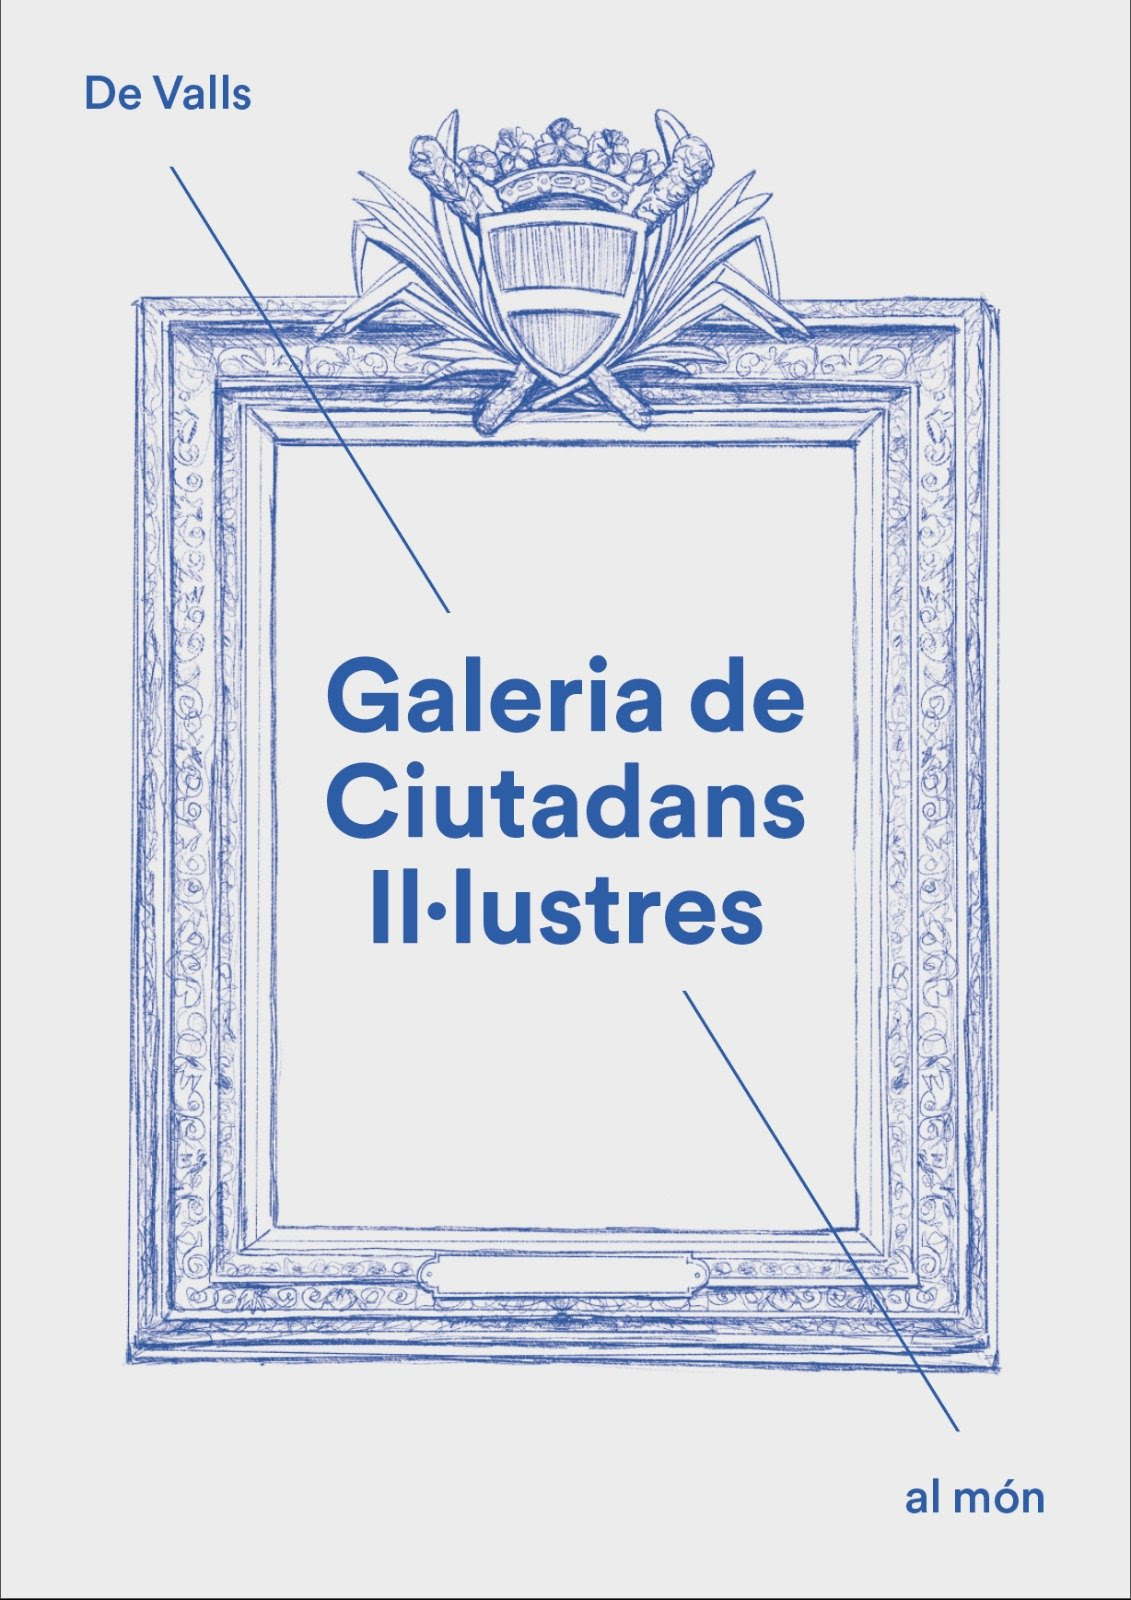 Galeria de Ciutadans Il·lustres. De Valls al món.